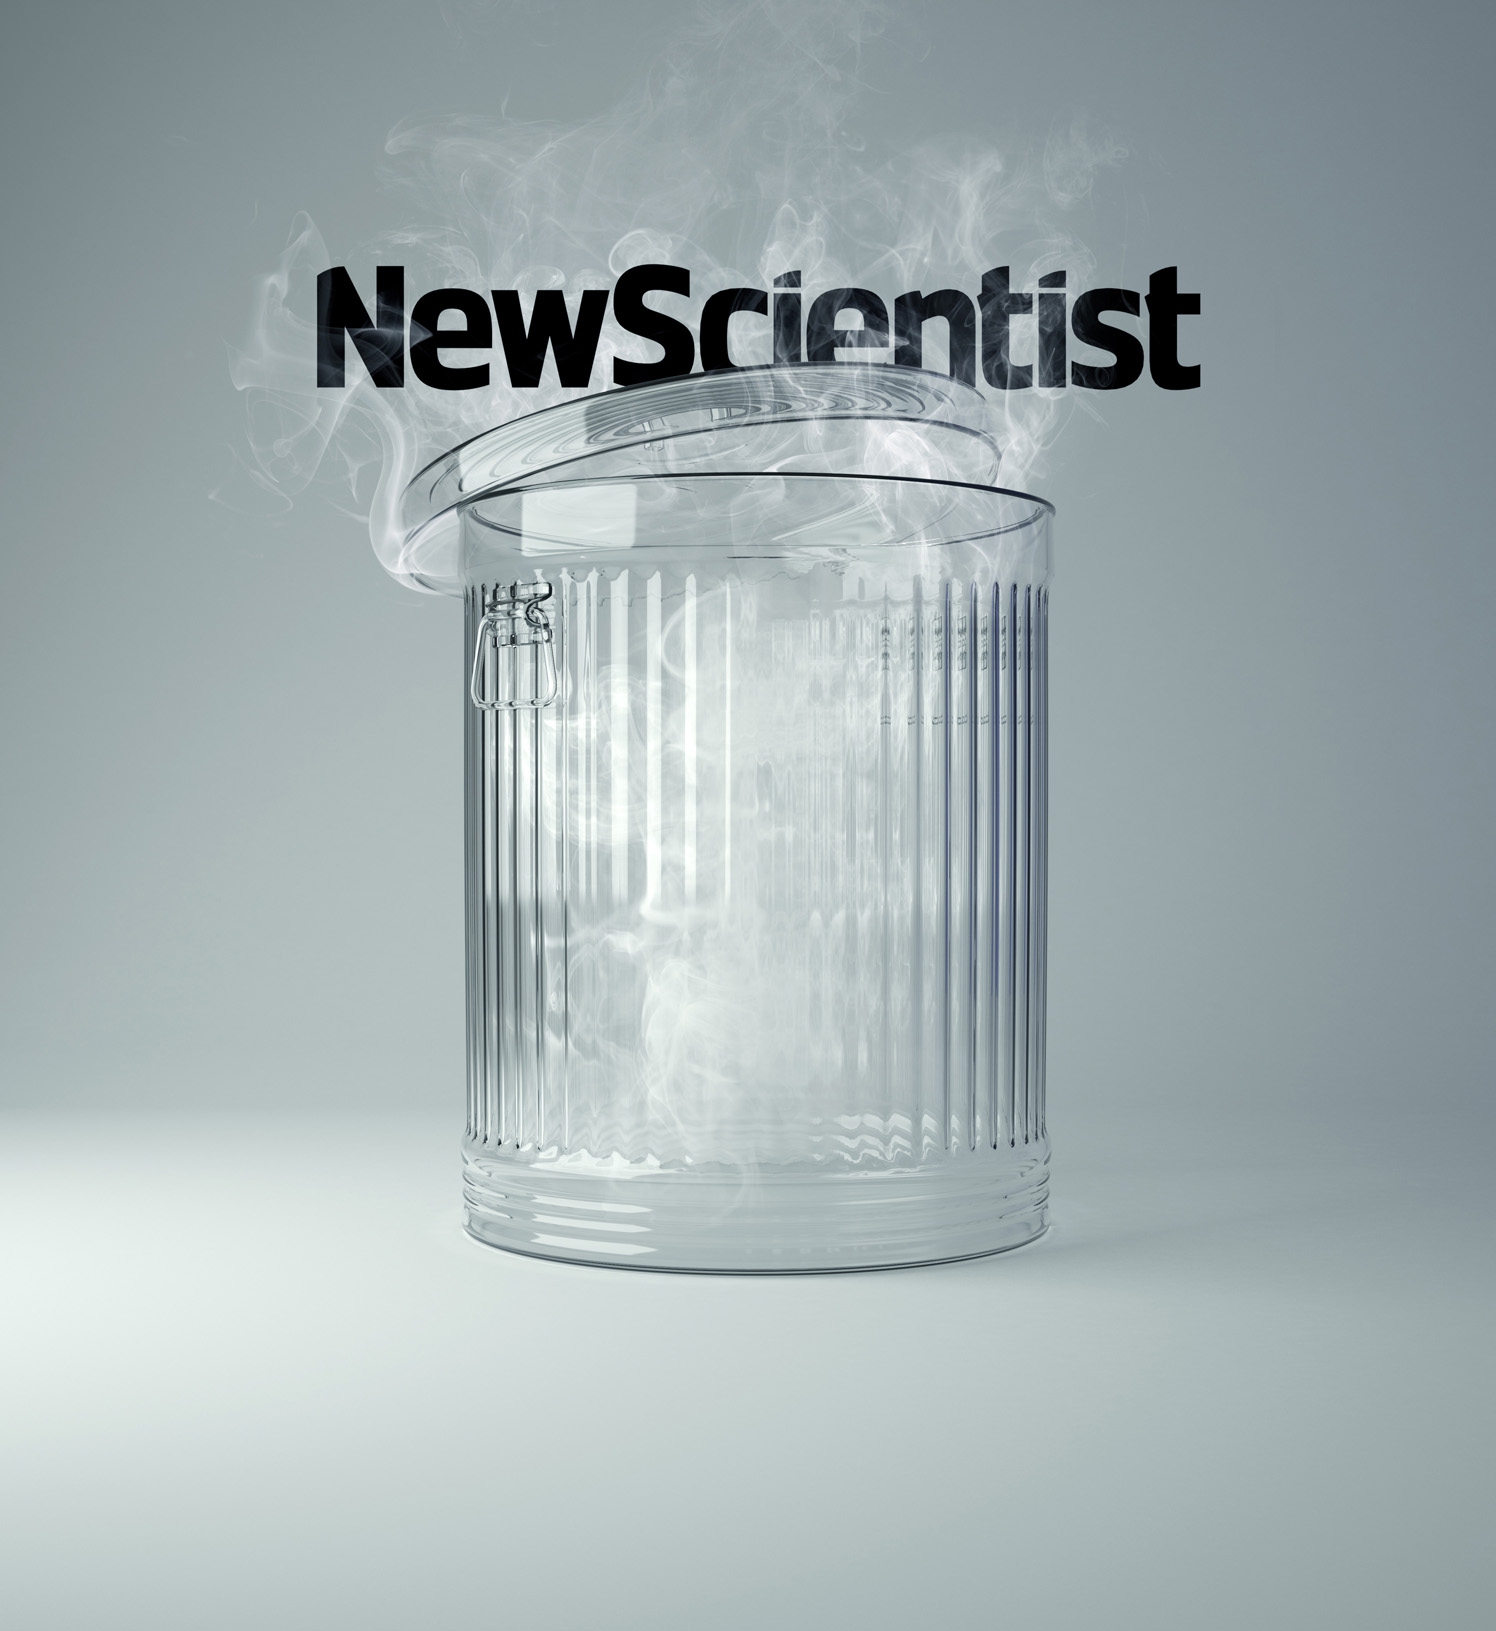 New Scientist Trash